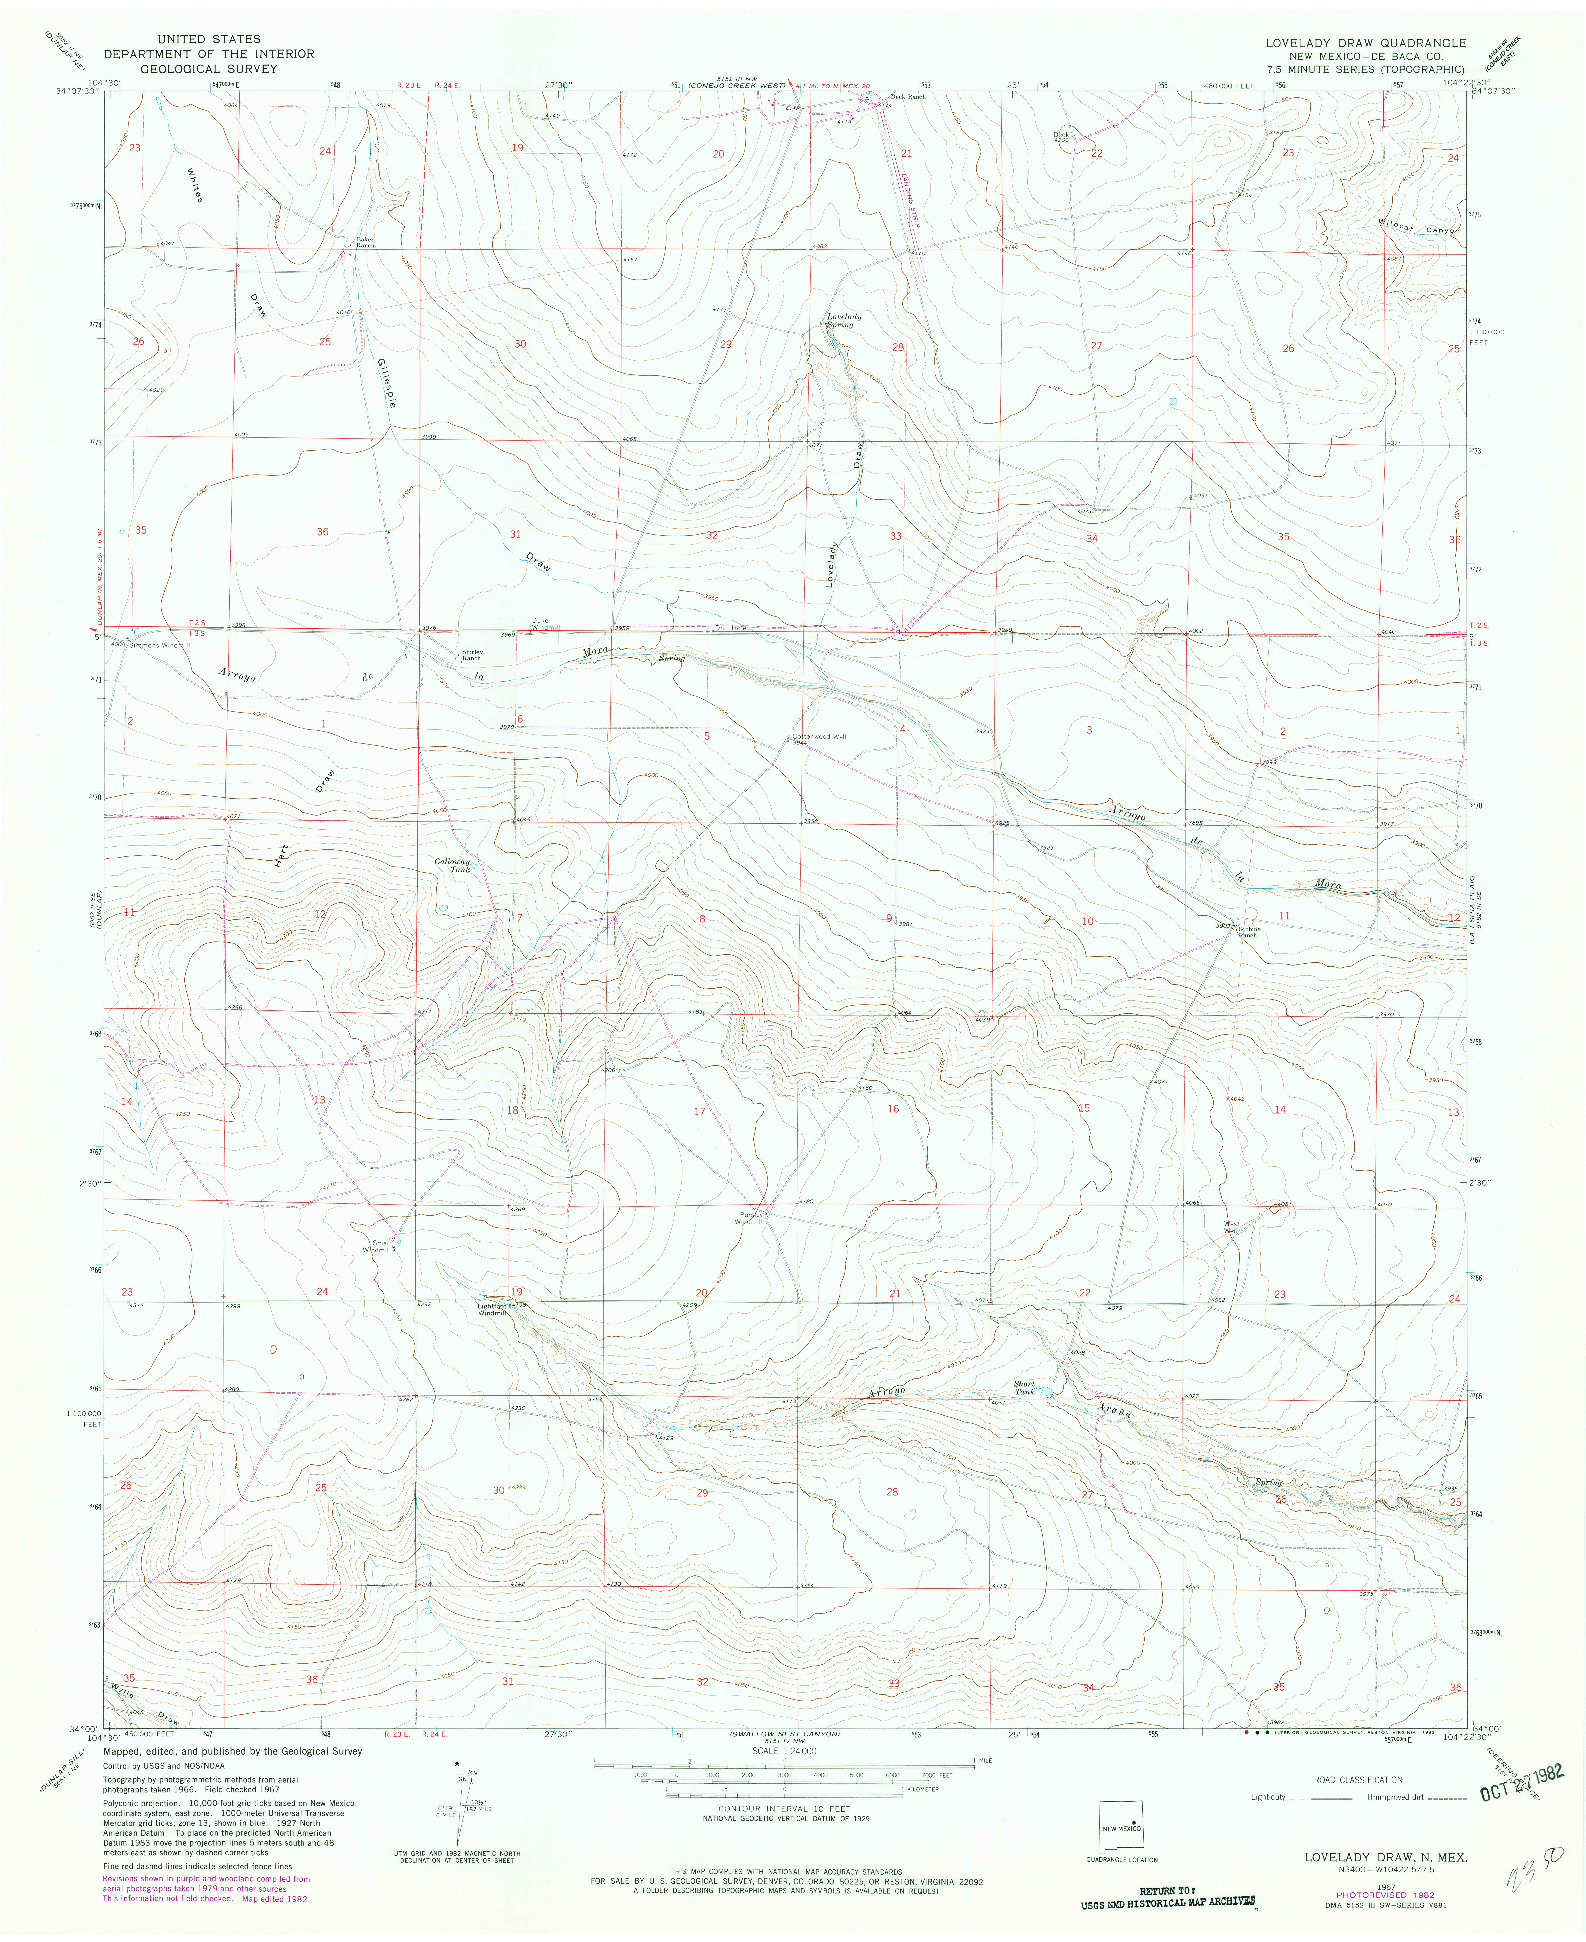 USGS 1:24000-SCALE QUADRANGLE FOR LOVELADY DRAW, NM 1967